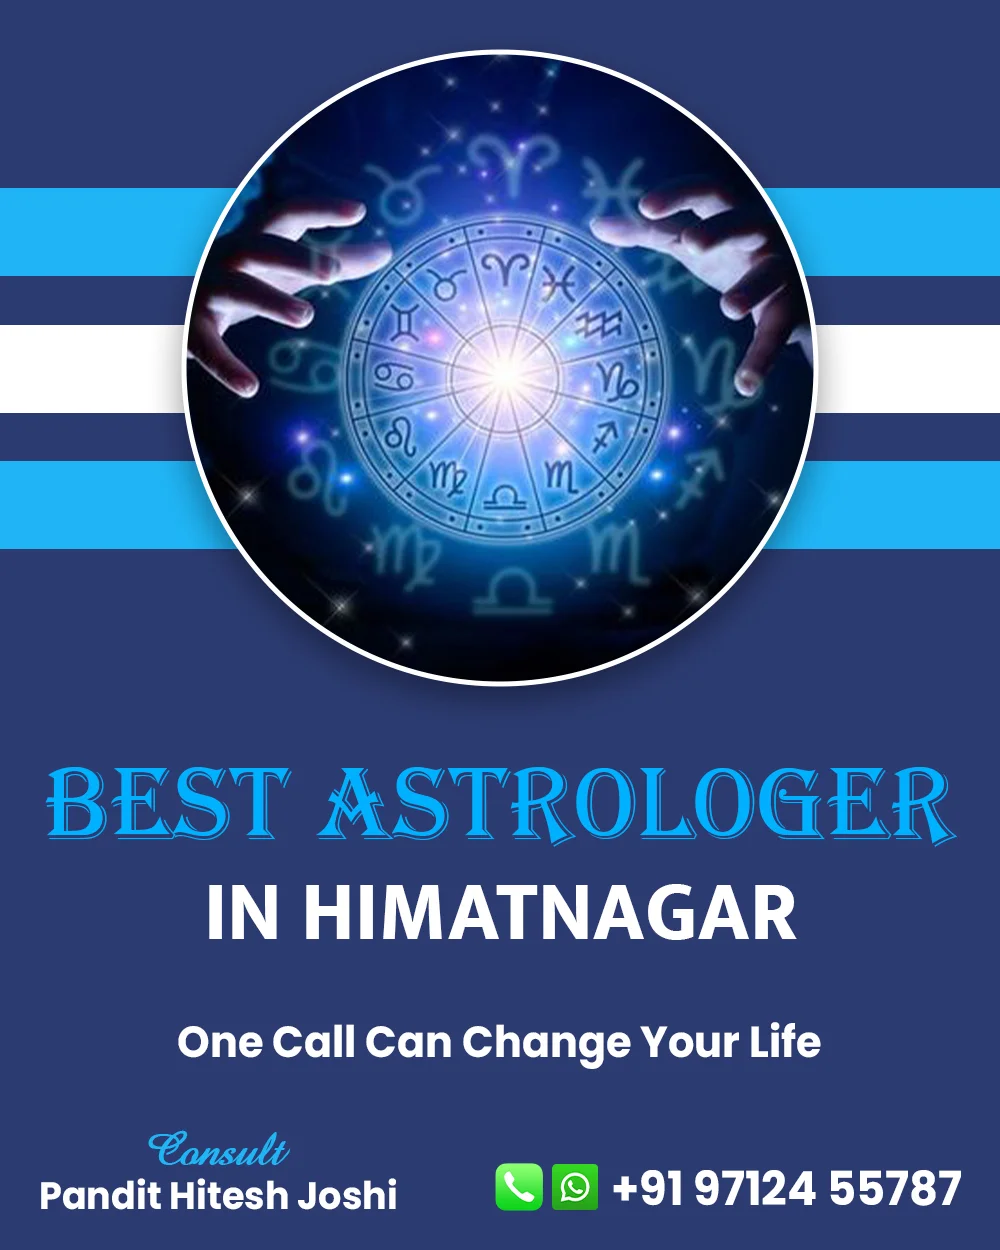 Best Astrologer in Himatnagar